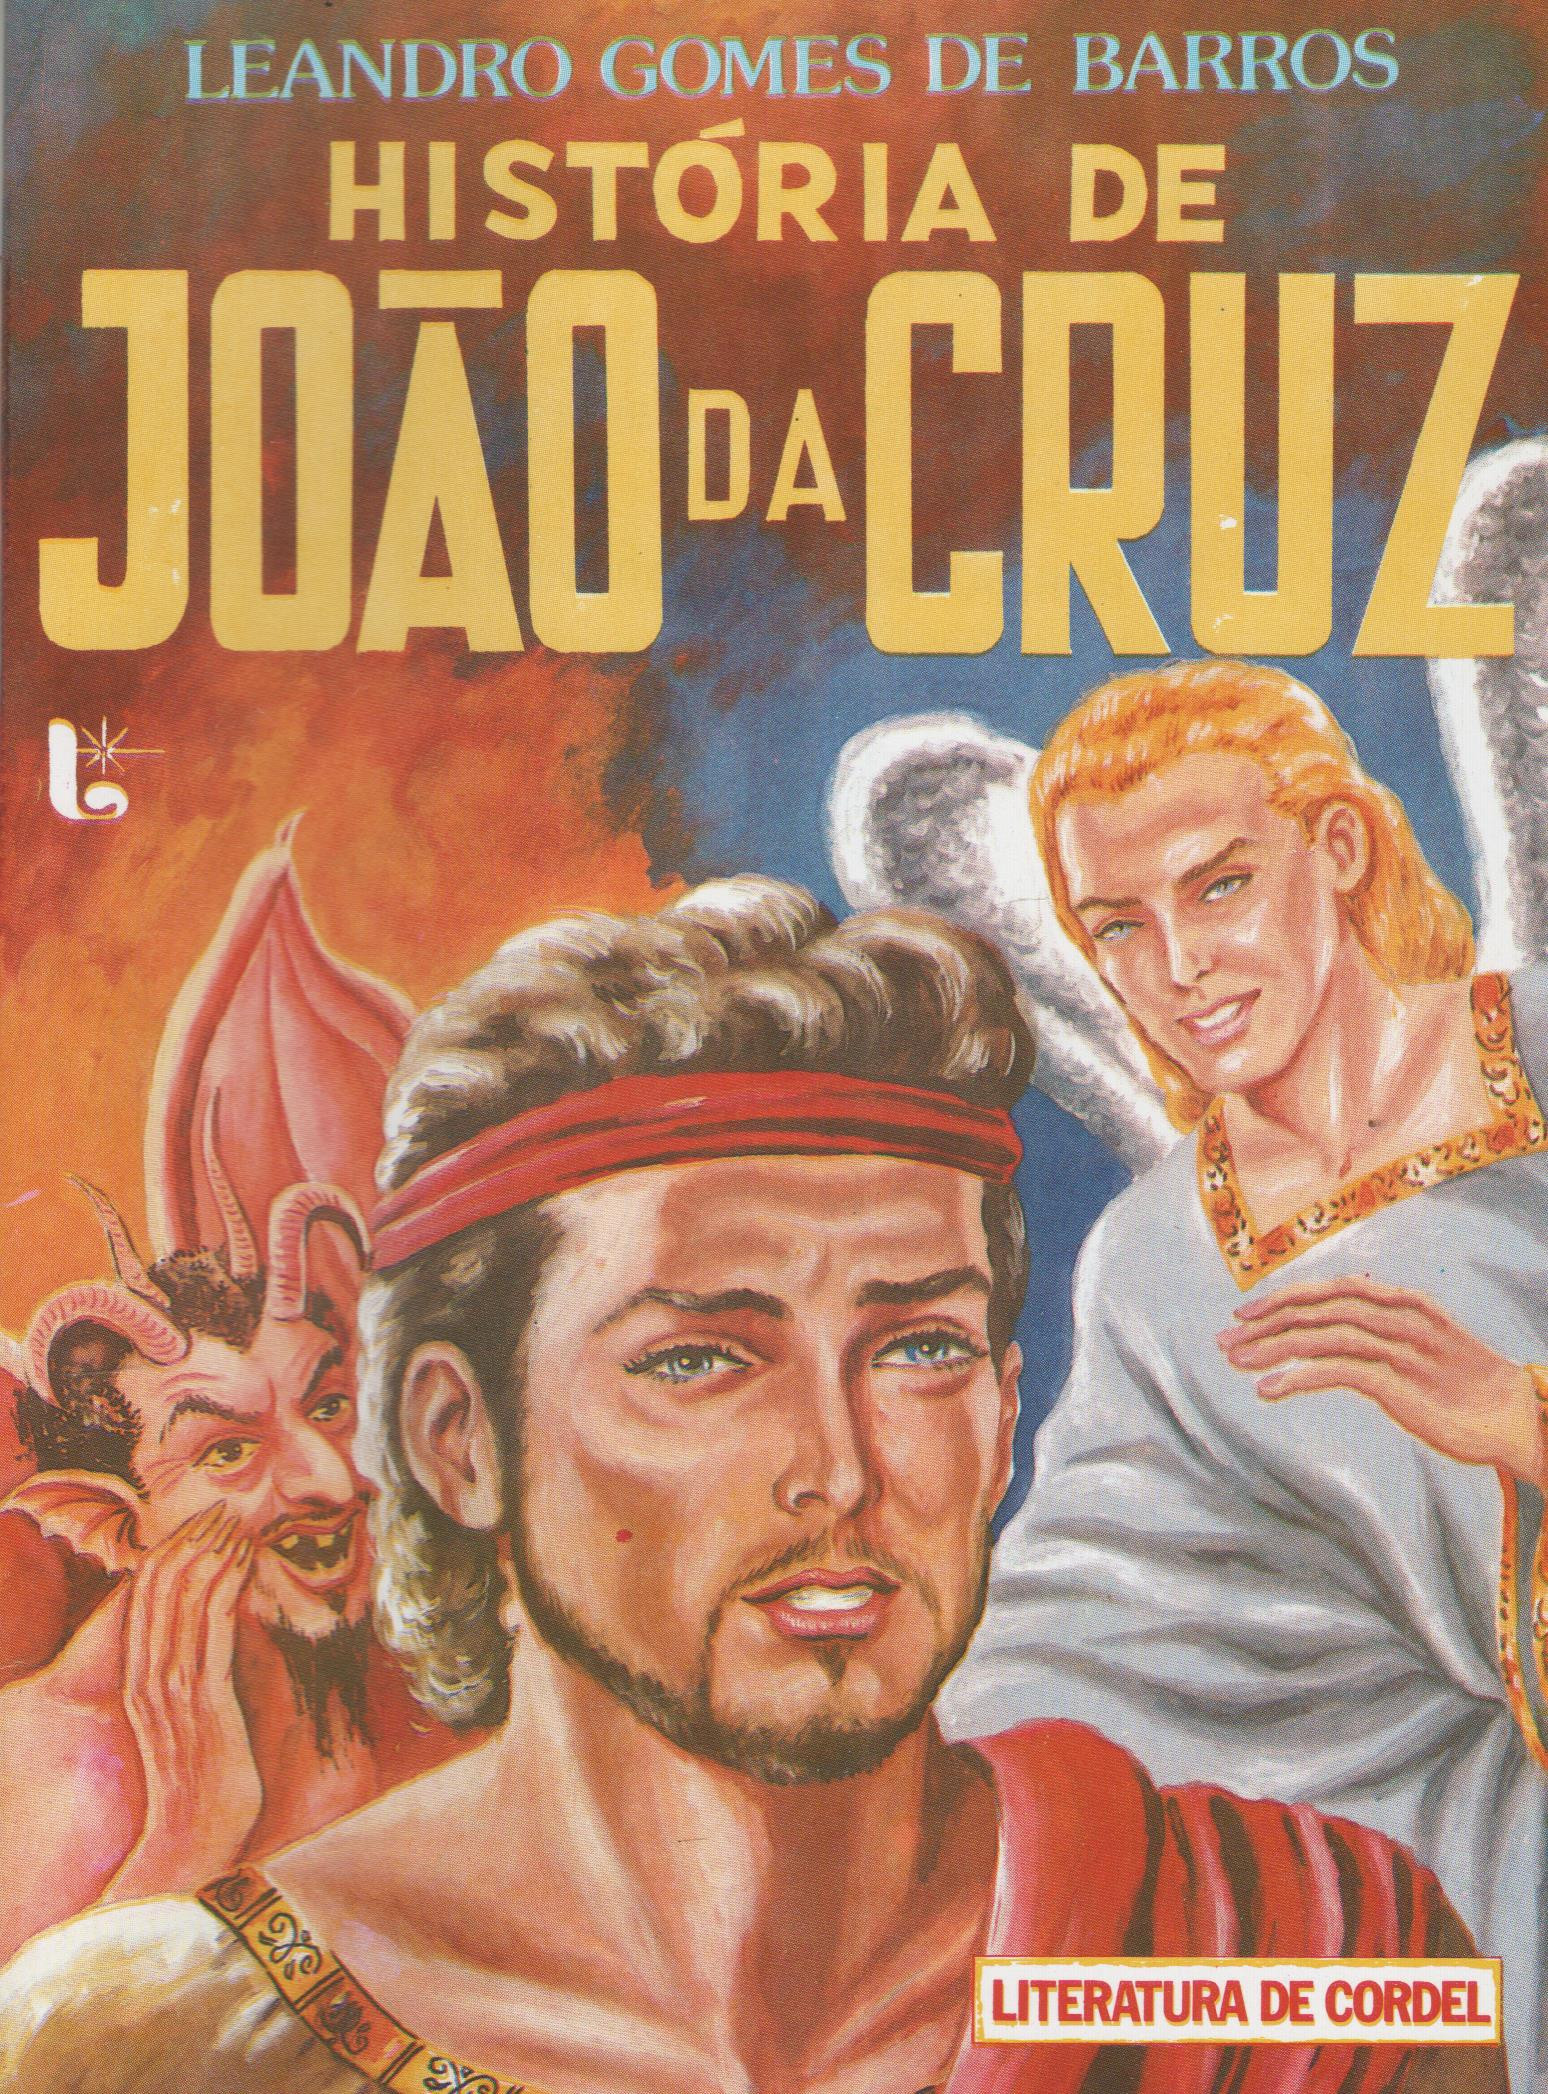 João da Cruz – Wikipédia, a enciclopédia livre